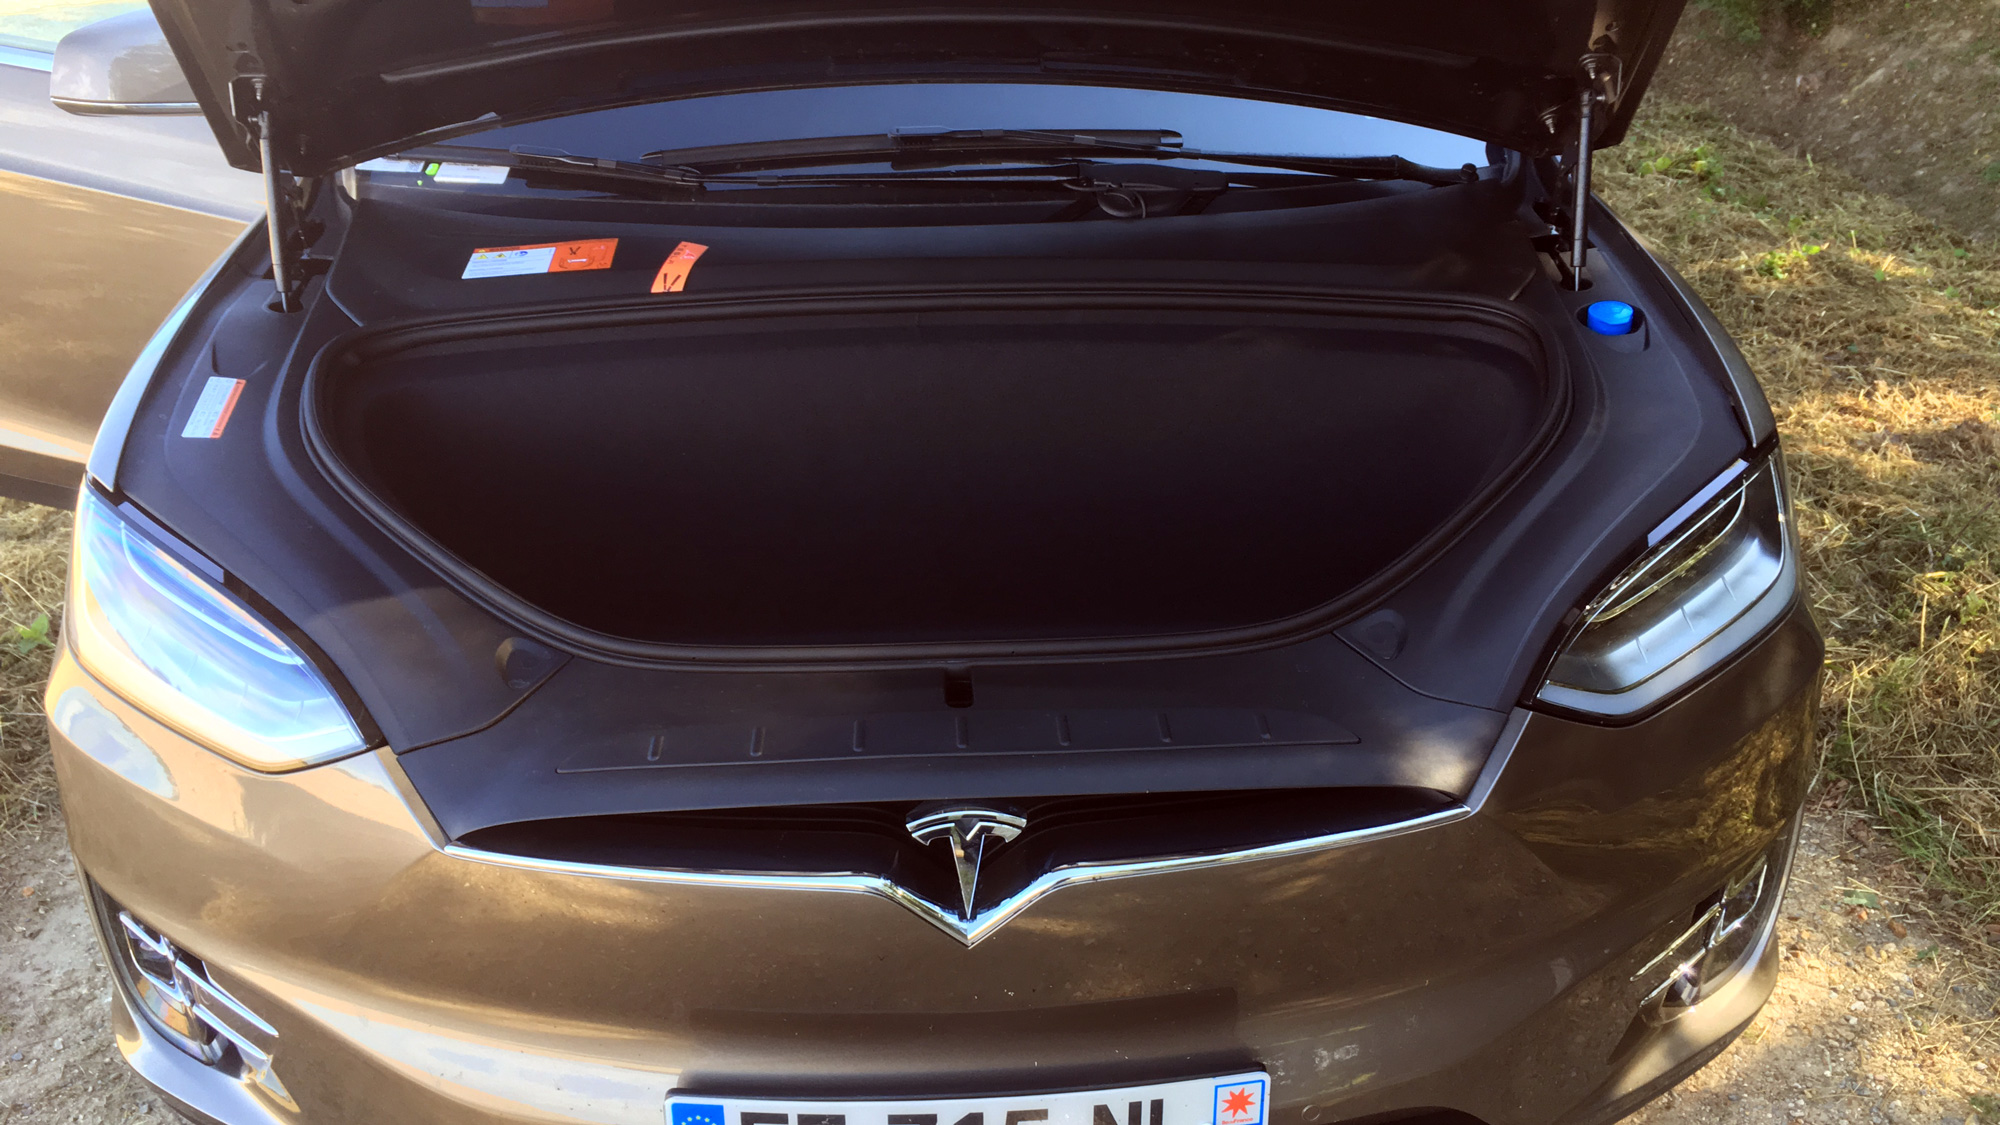 Tesla Model X Coffre Voiture Doublure Et Pare-chocs Rabat